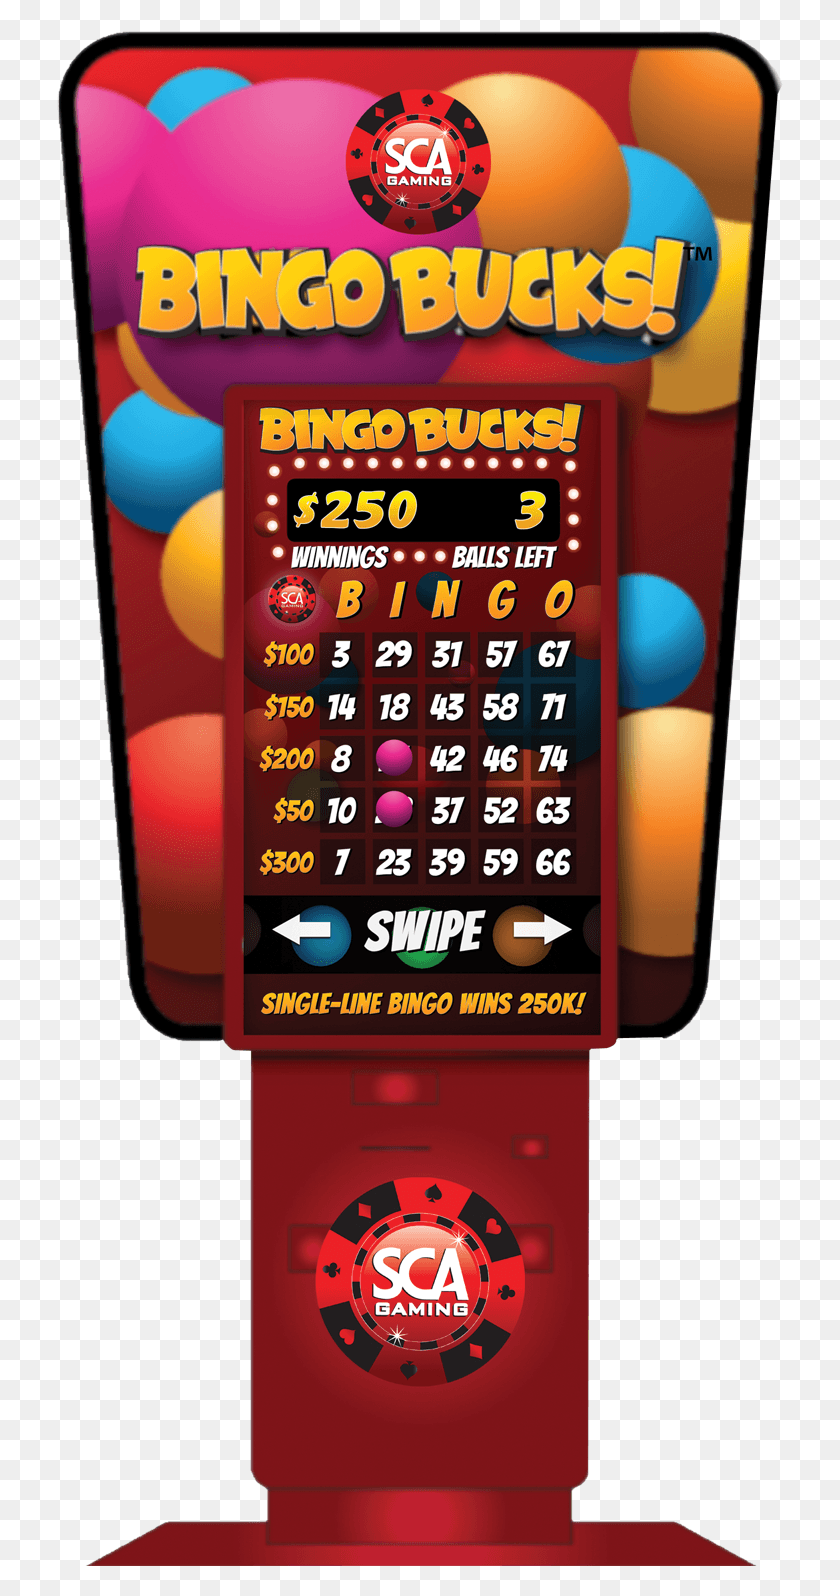 727x1536 Bingo Bucks Предлагается В Виде Цифровой Киоск-Игры, Текст, Мобильный Телефон, Телефон Hd Png Скачать